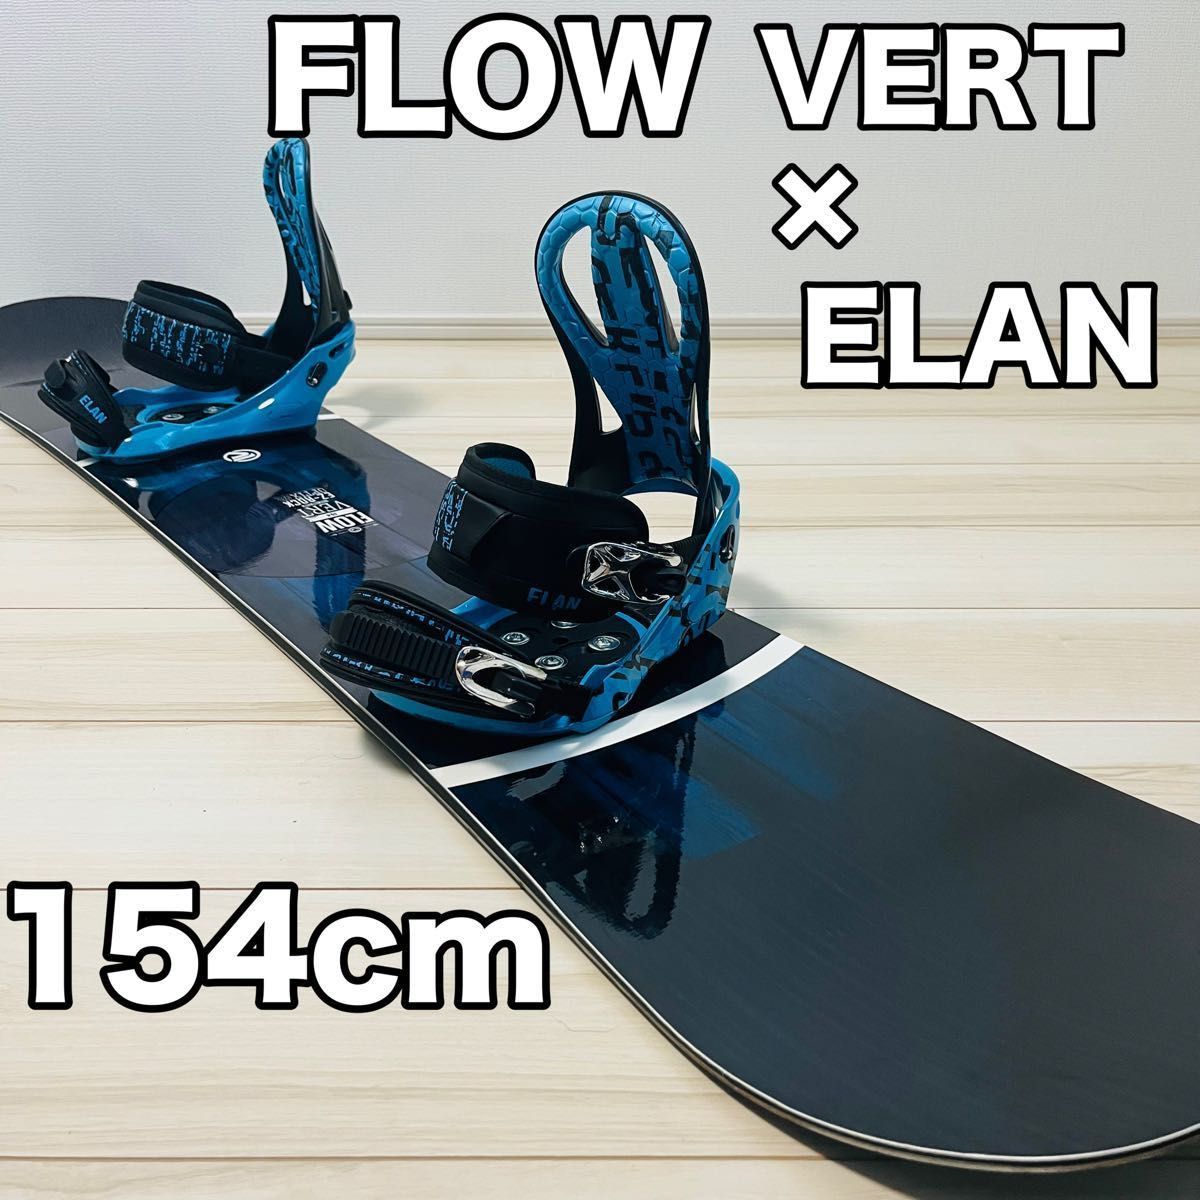 FLOW フロー VERT バート スノーボード 154cm ELAN エラン ビンディング 2点セット